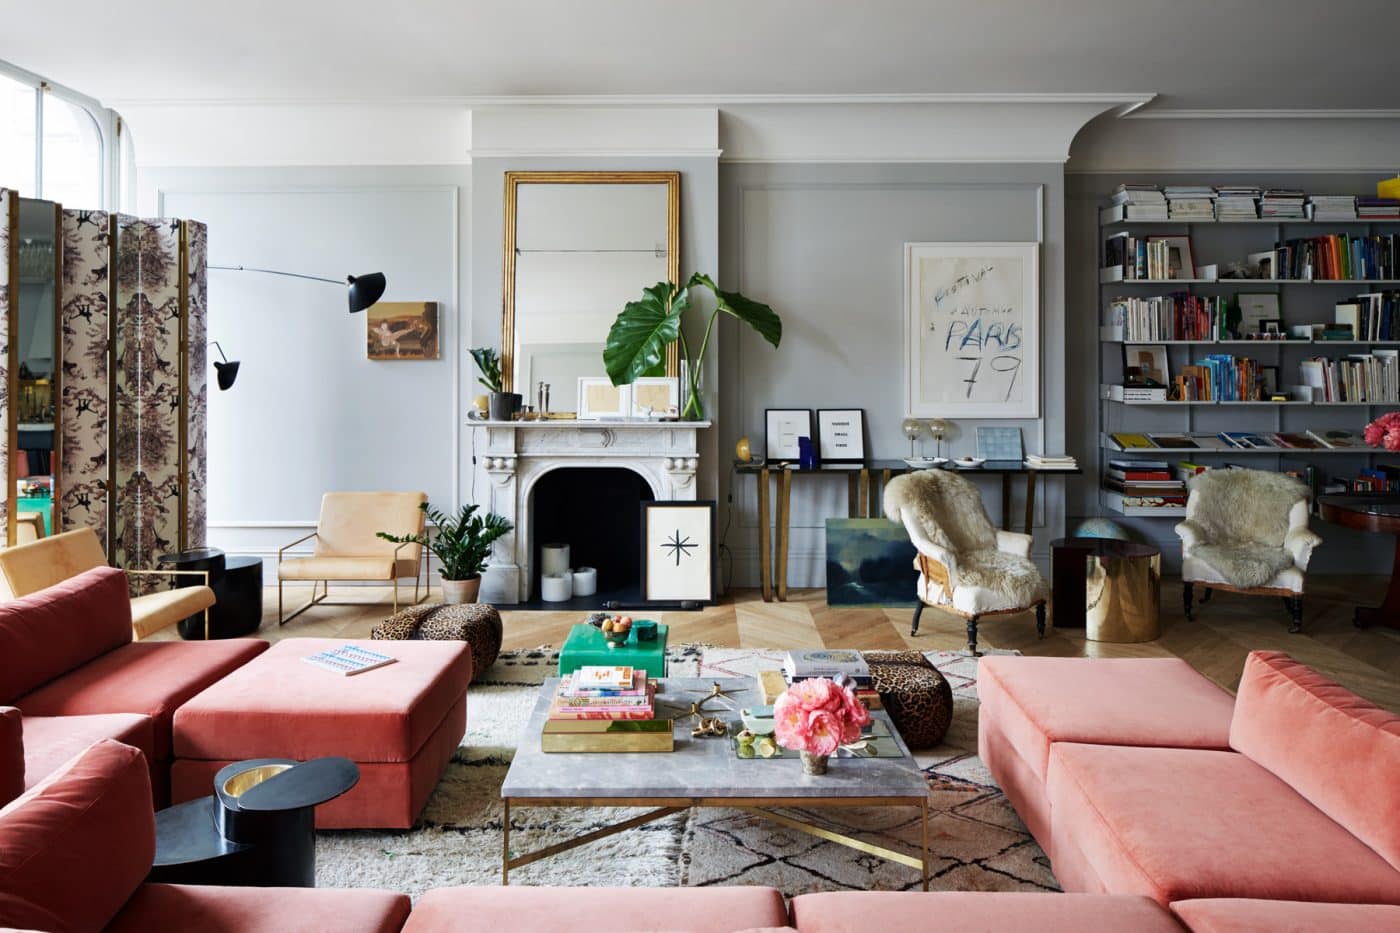 The living room of Jenna Lyons' Soho loft apartment